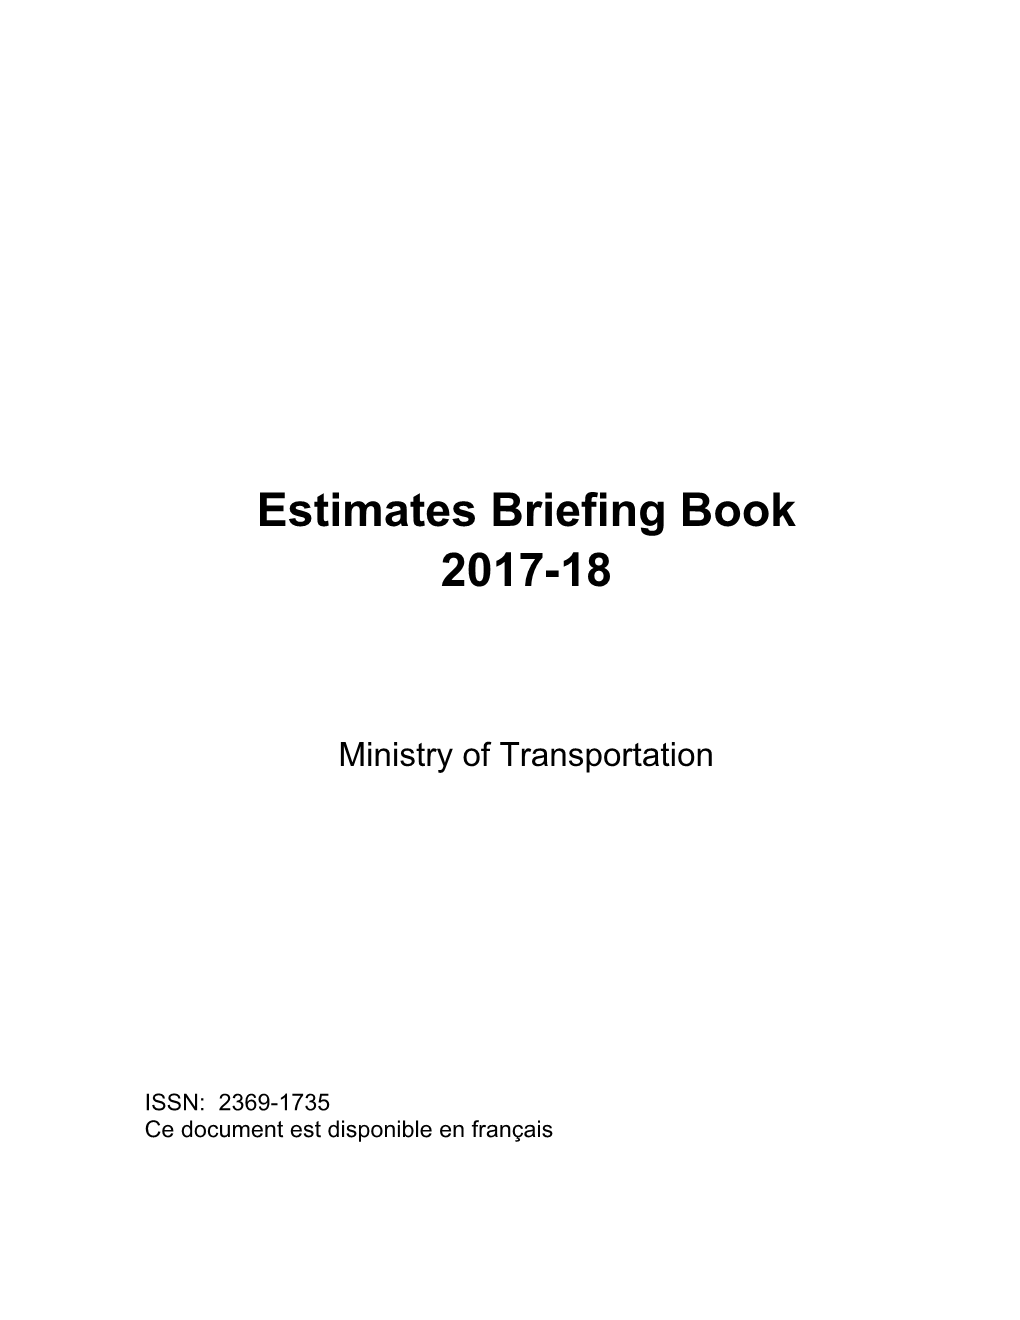 Download Estimates Briefing Book 2017-18